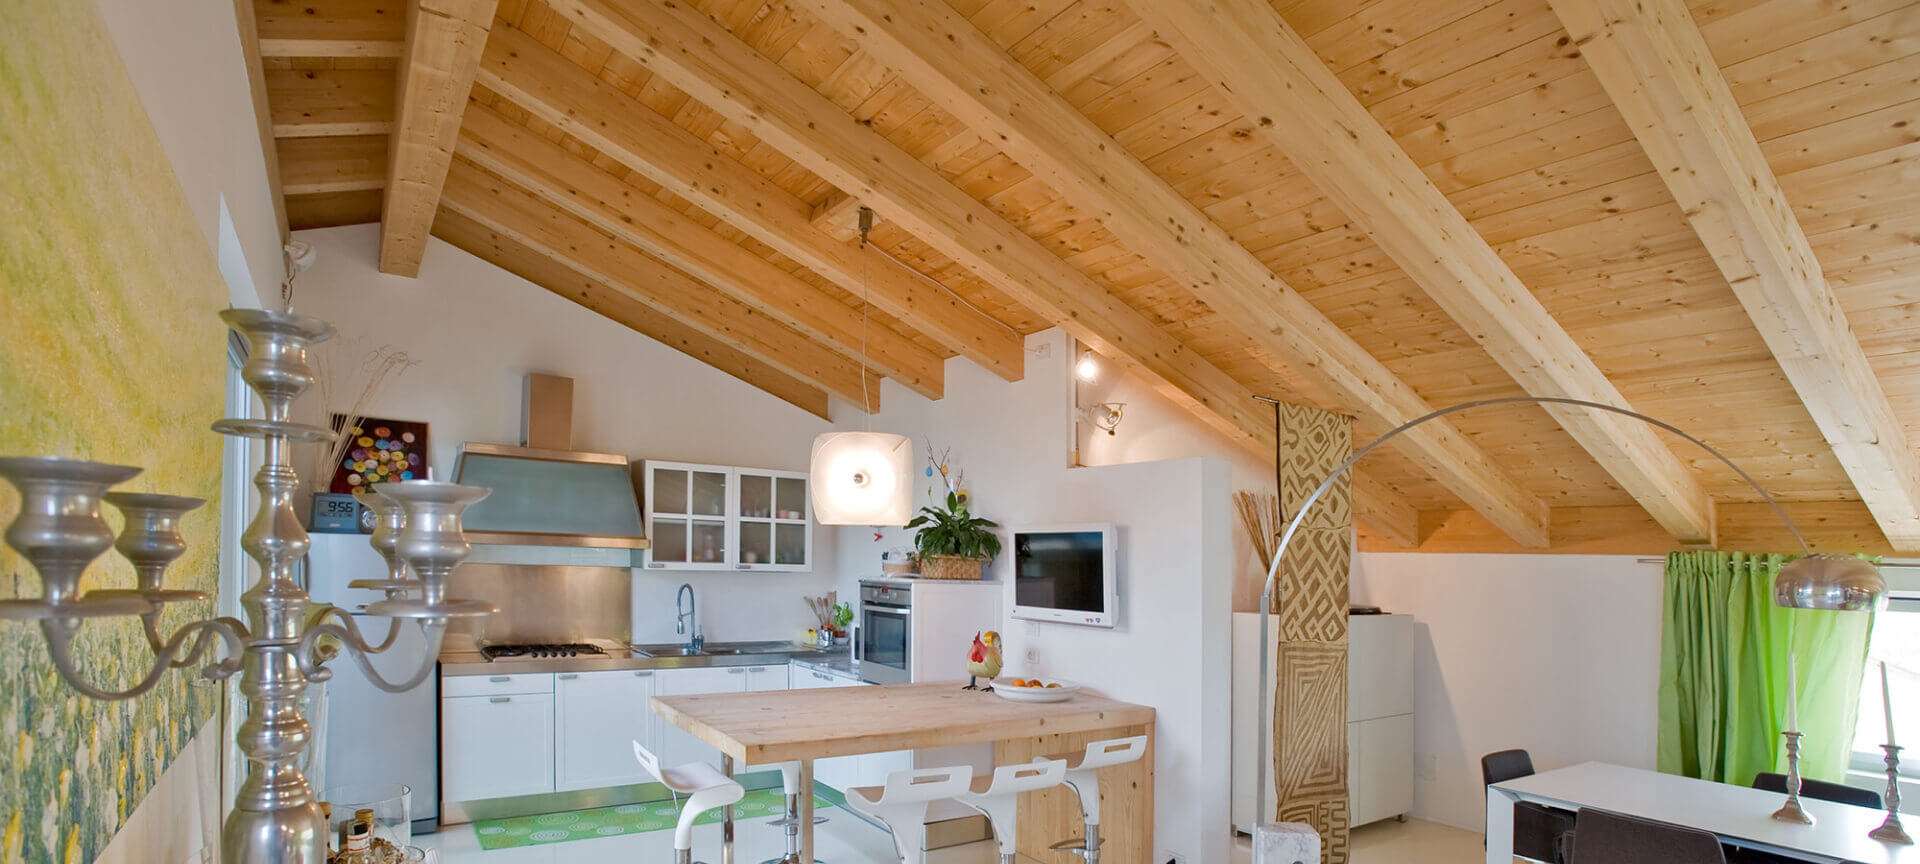 Grosso-Legnoarchitetture-tetti-solai-in-legno-wooden-house-progettazione